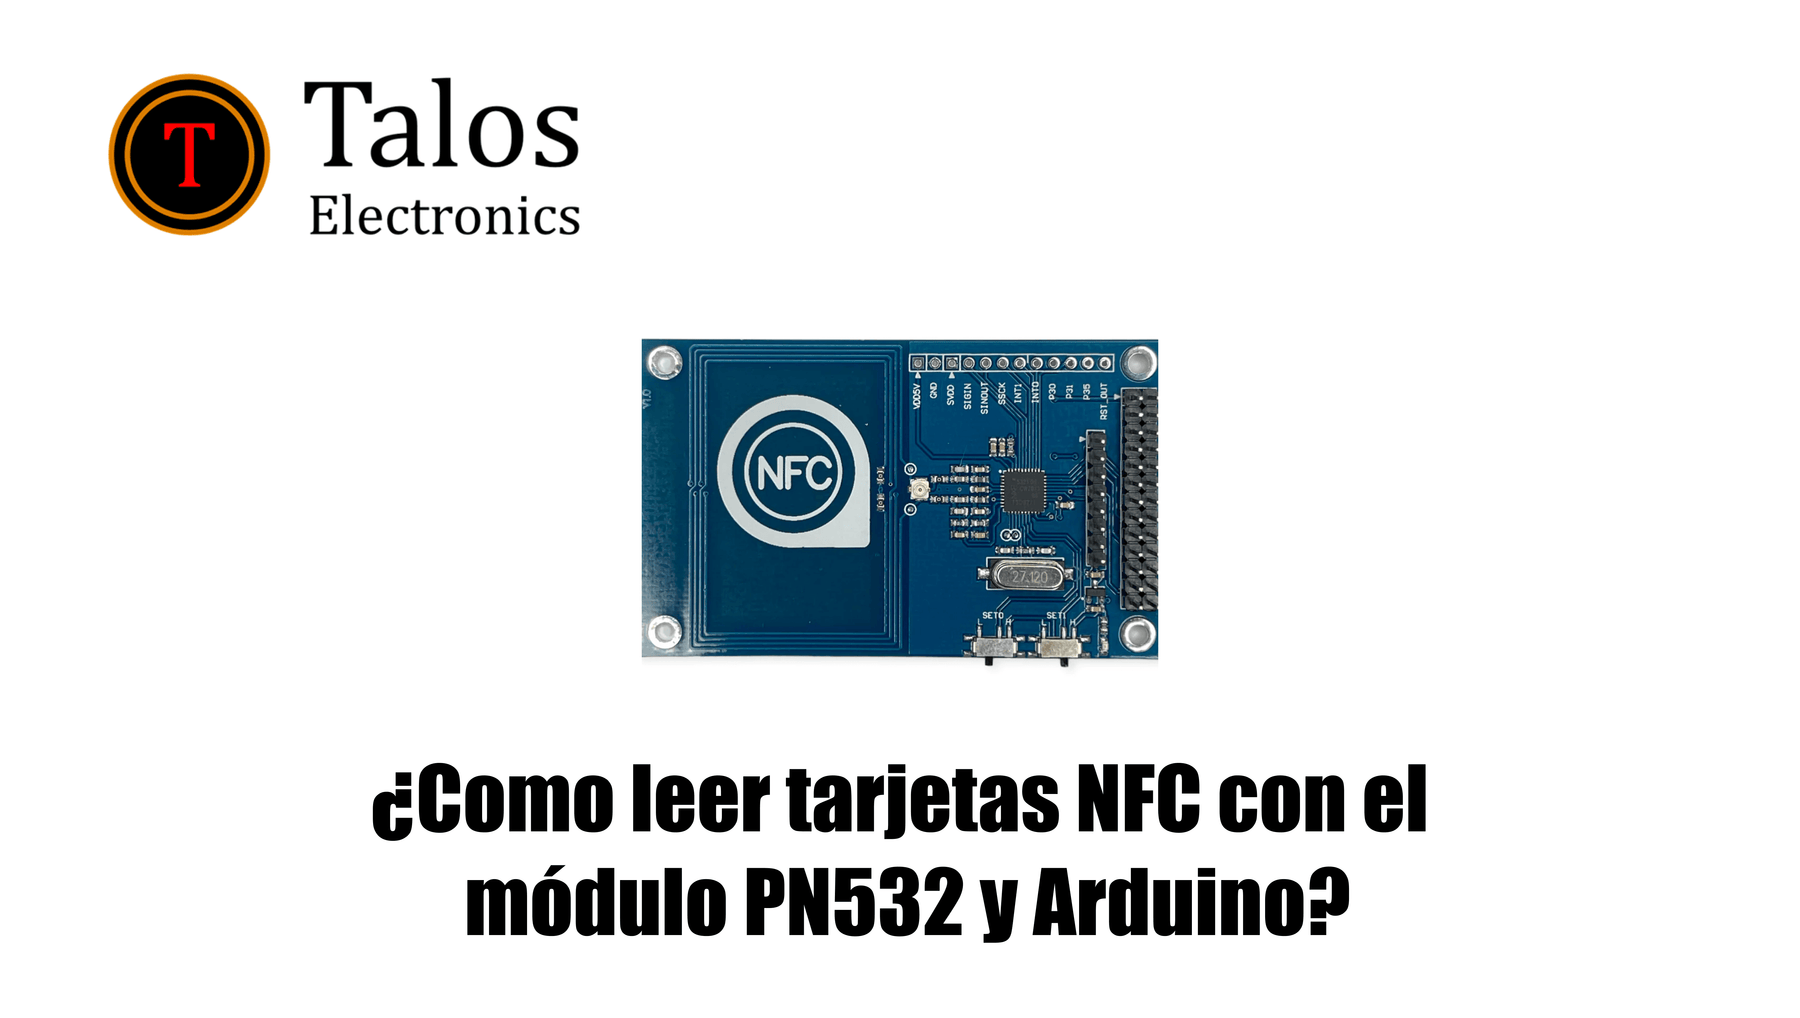 ¿Como leer tarjetas NFC con módulo PN532 y Arduino?